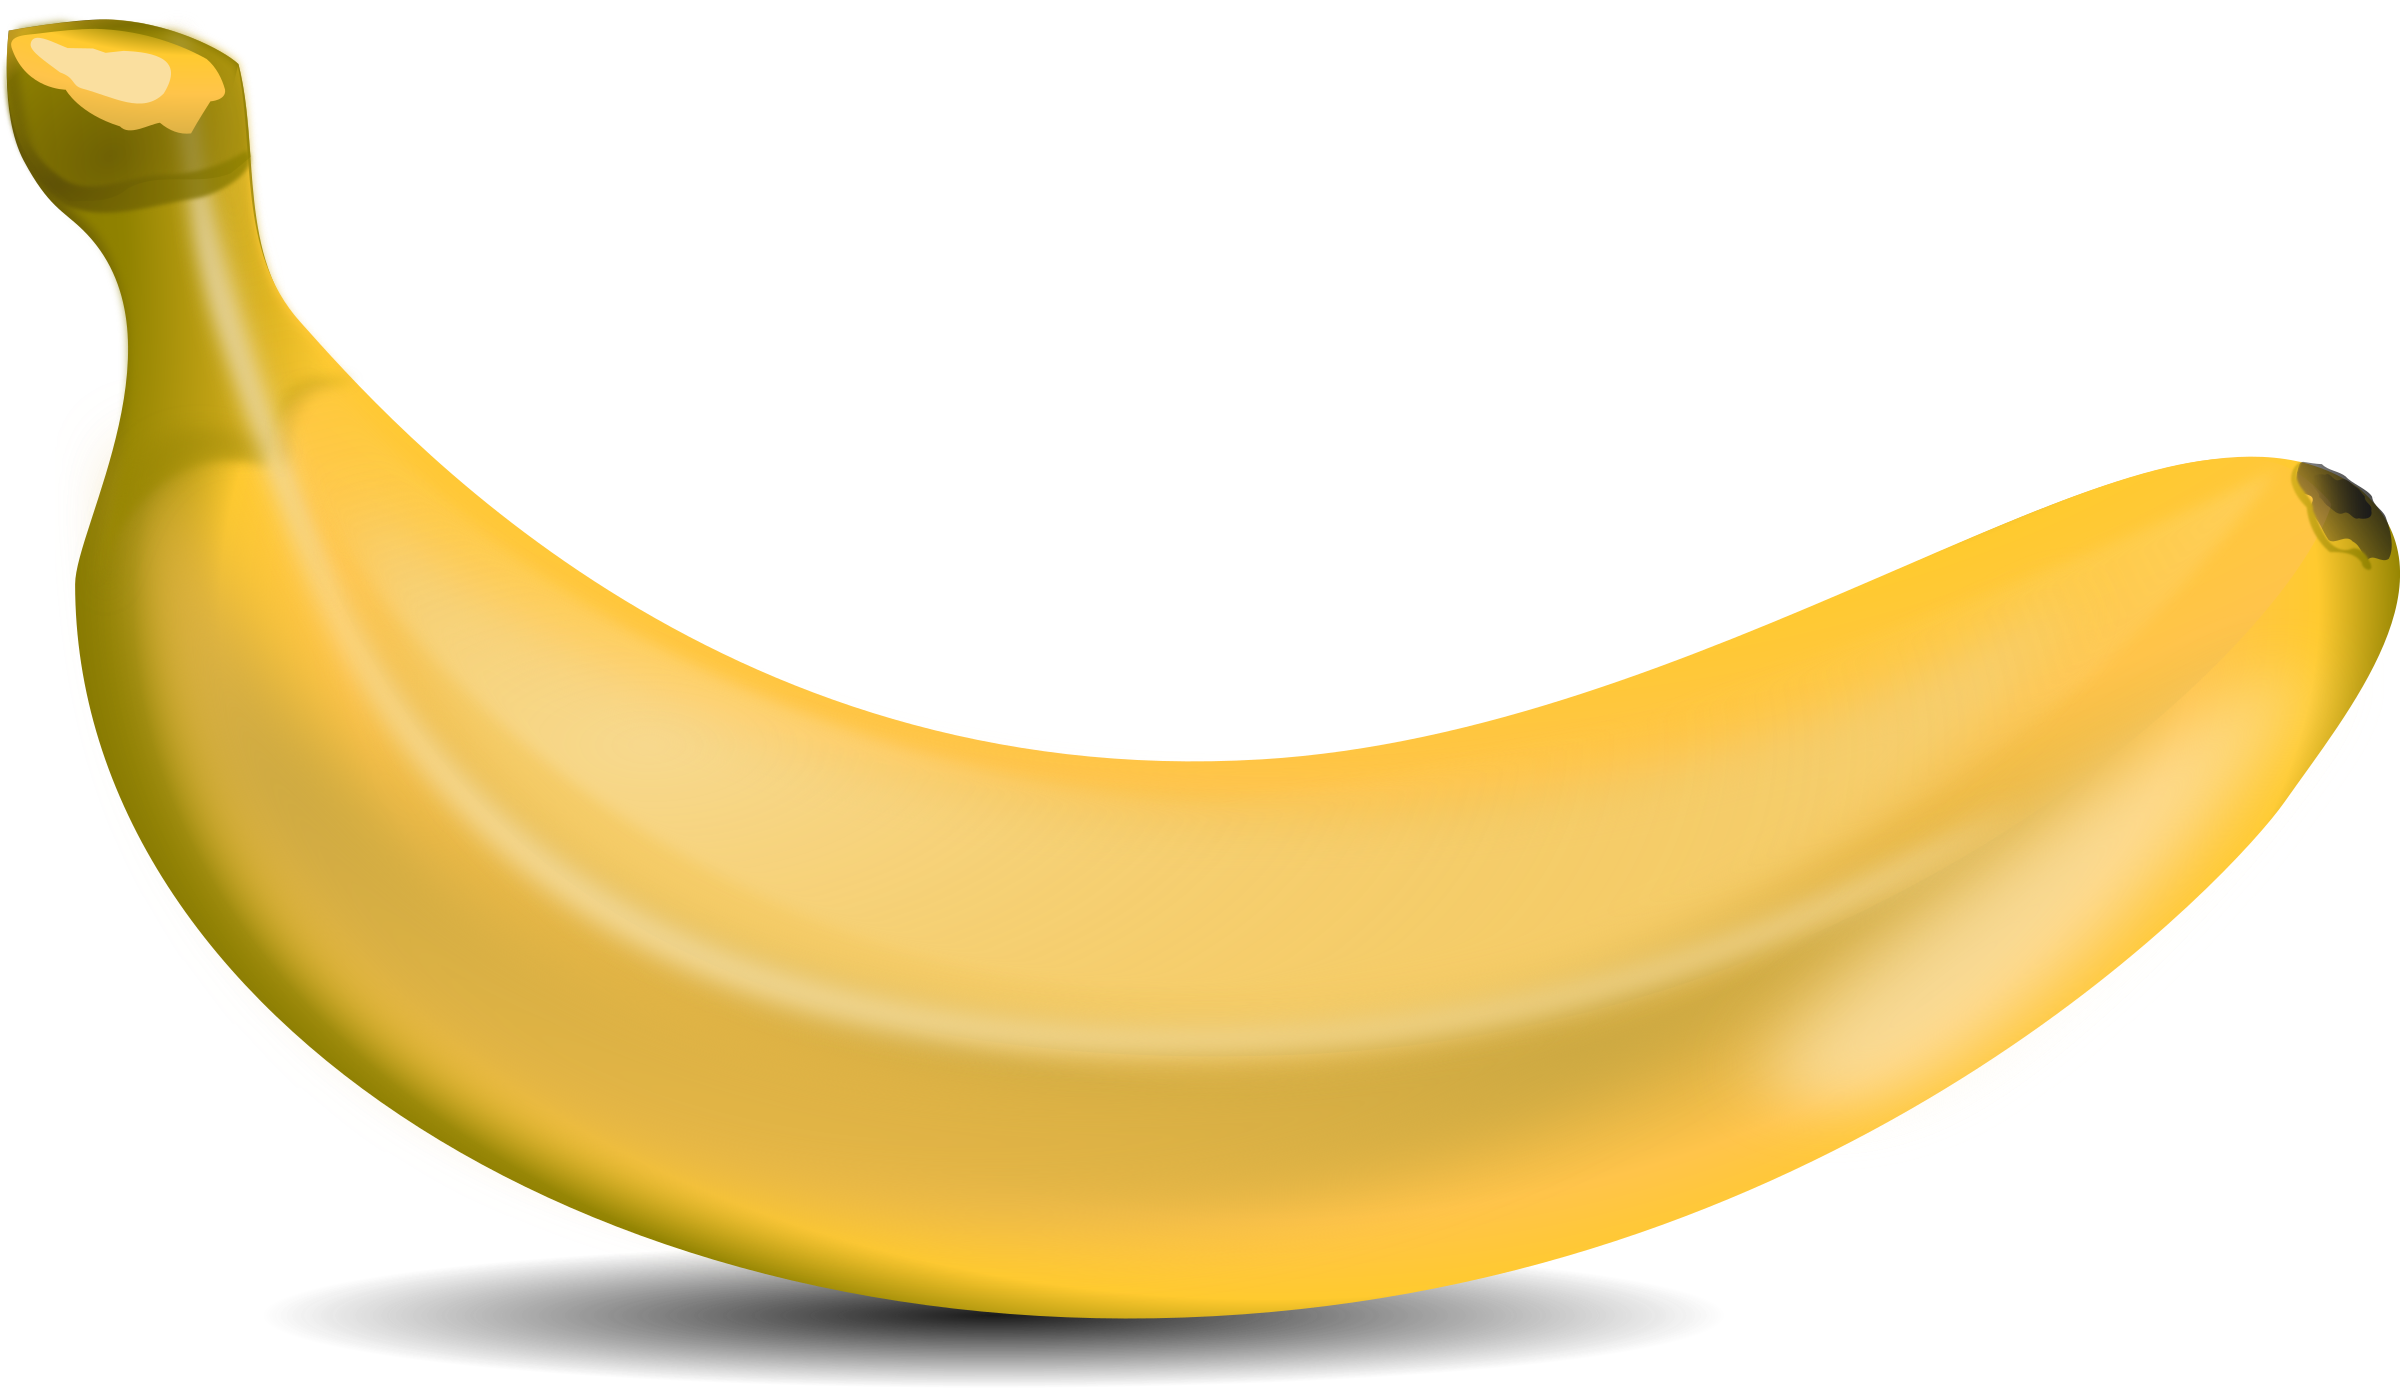 Banana png images.